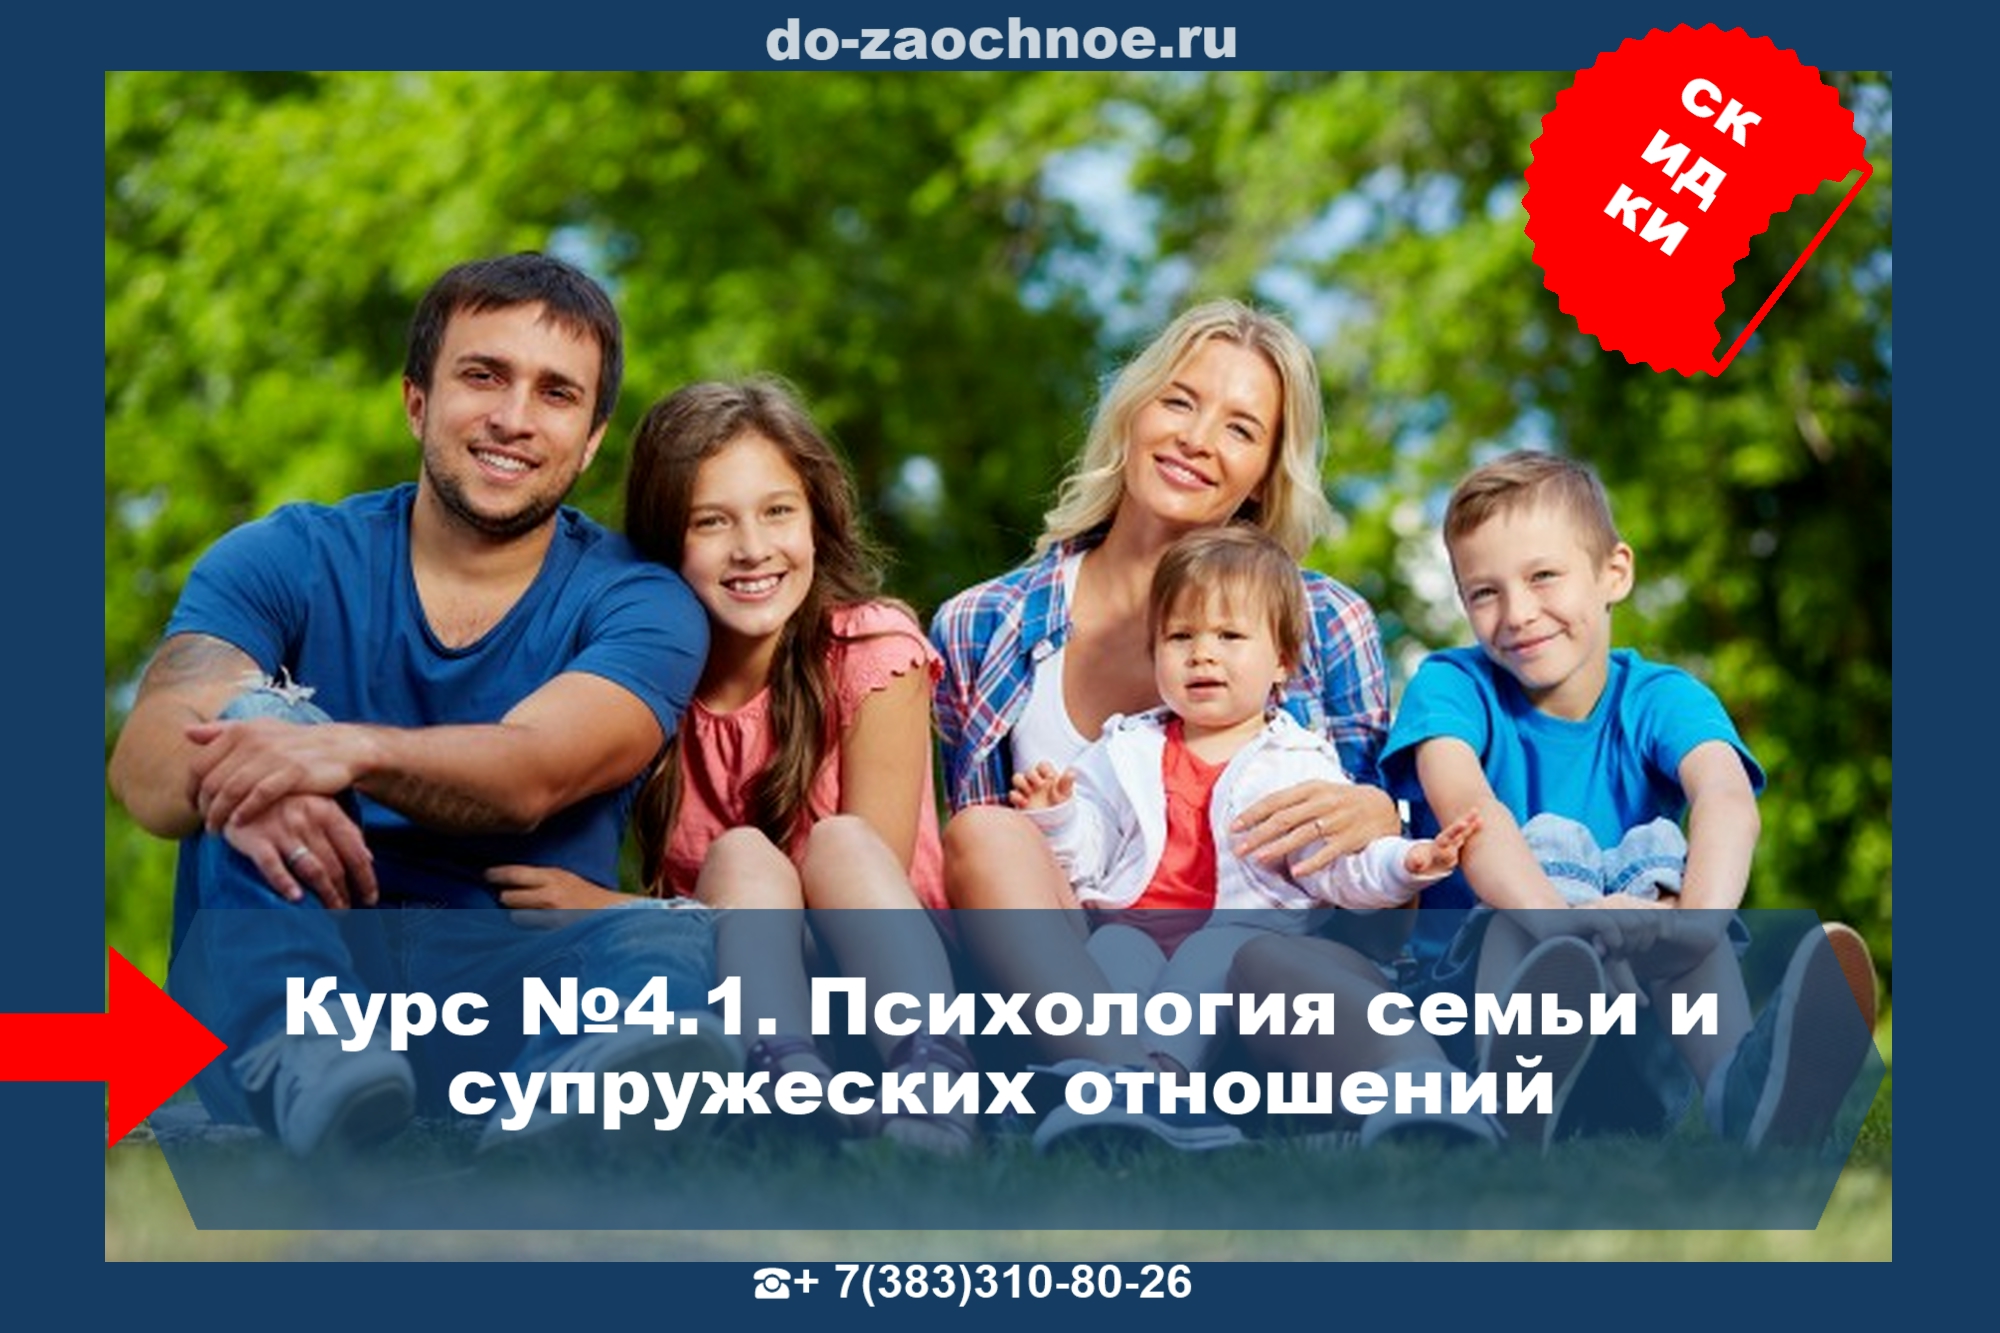 Дистанционный курс Психология семьи и супружеских отношений на do-zaochnoe.ru